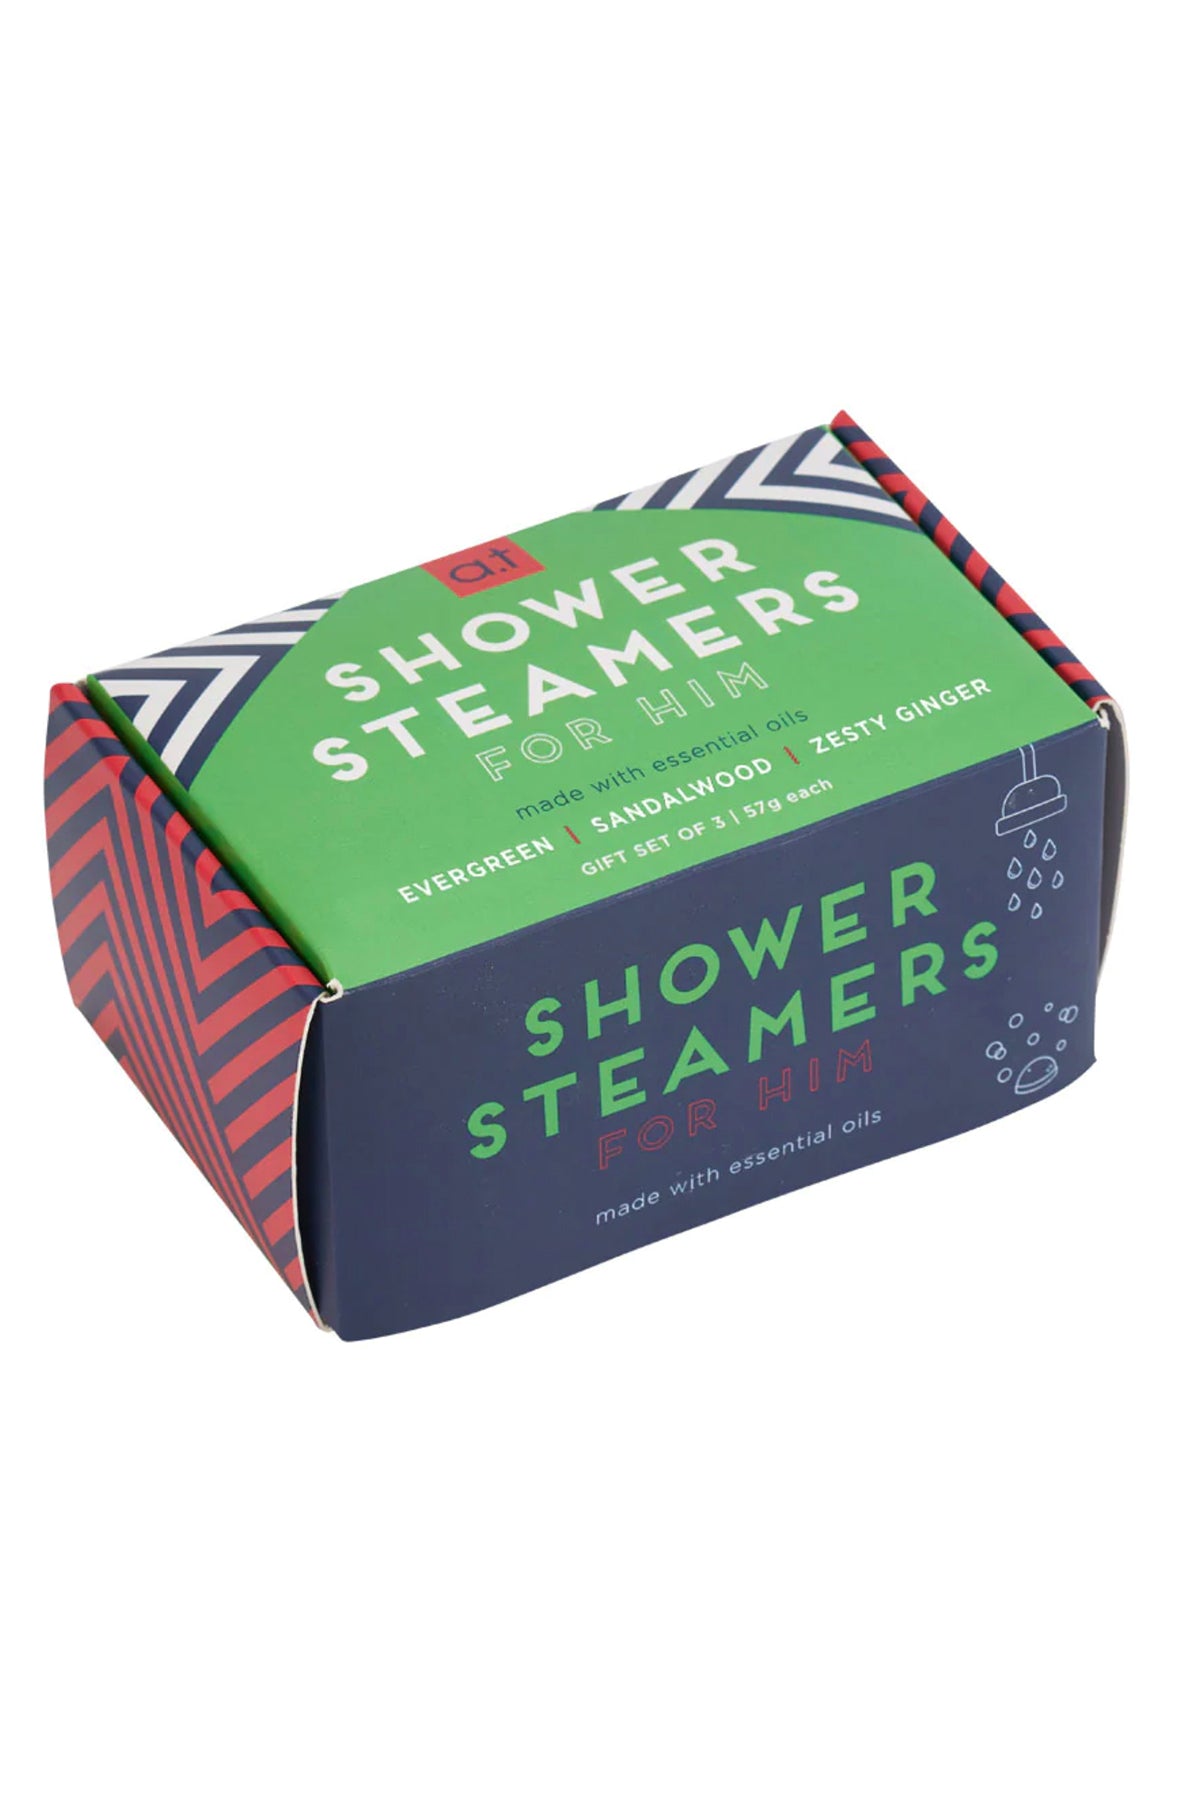 Shower Steamer Gift Box Forest